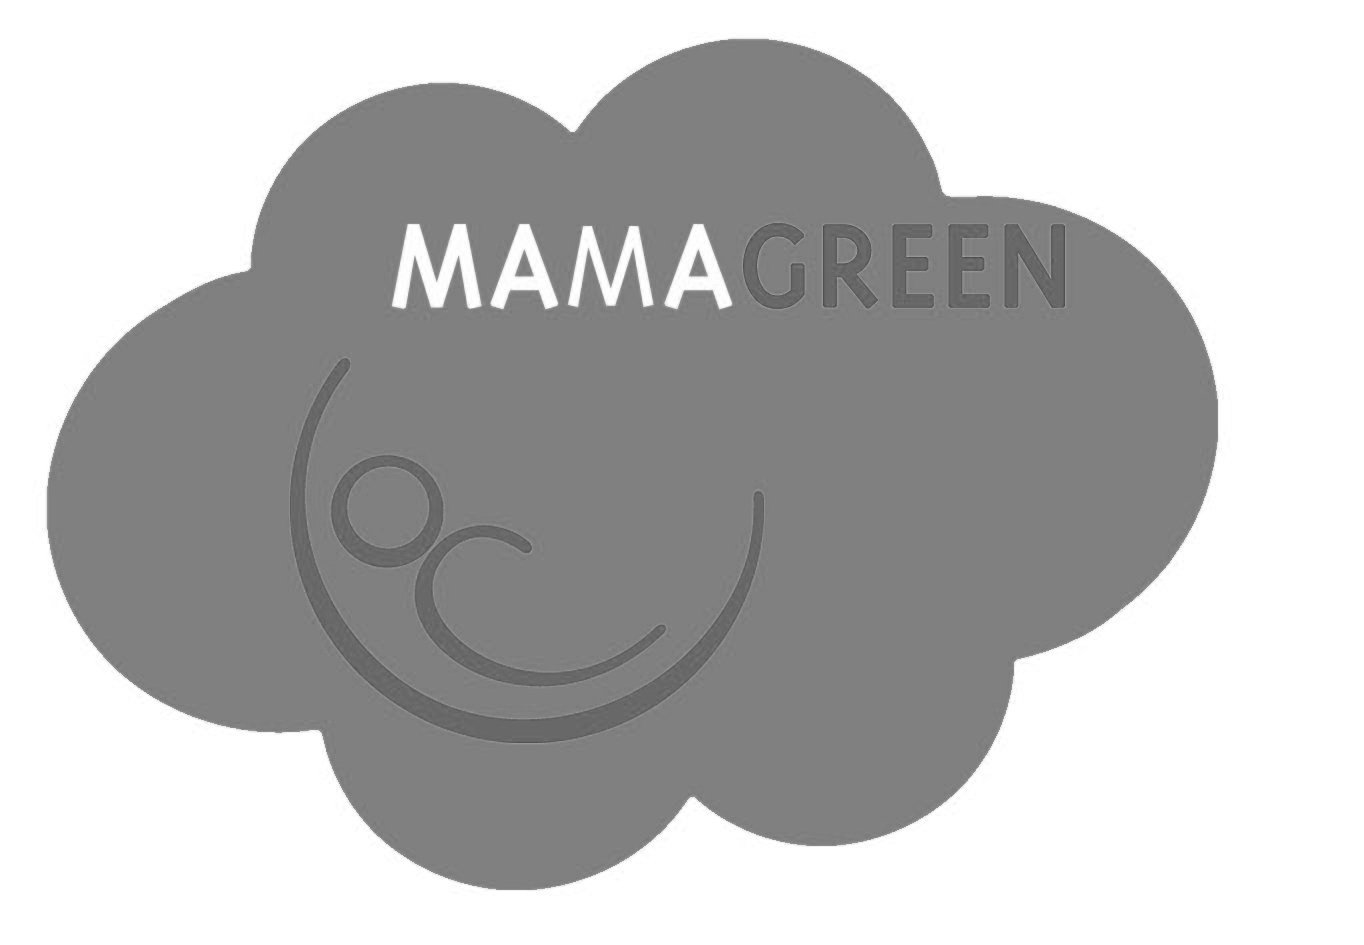 2013-01-25-20-46-26.mamagreen+logo+kopie.jpg